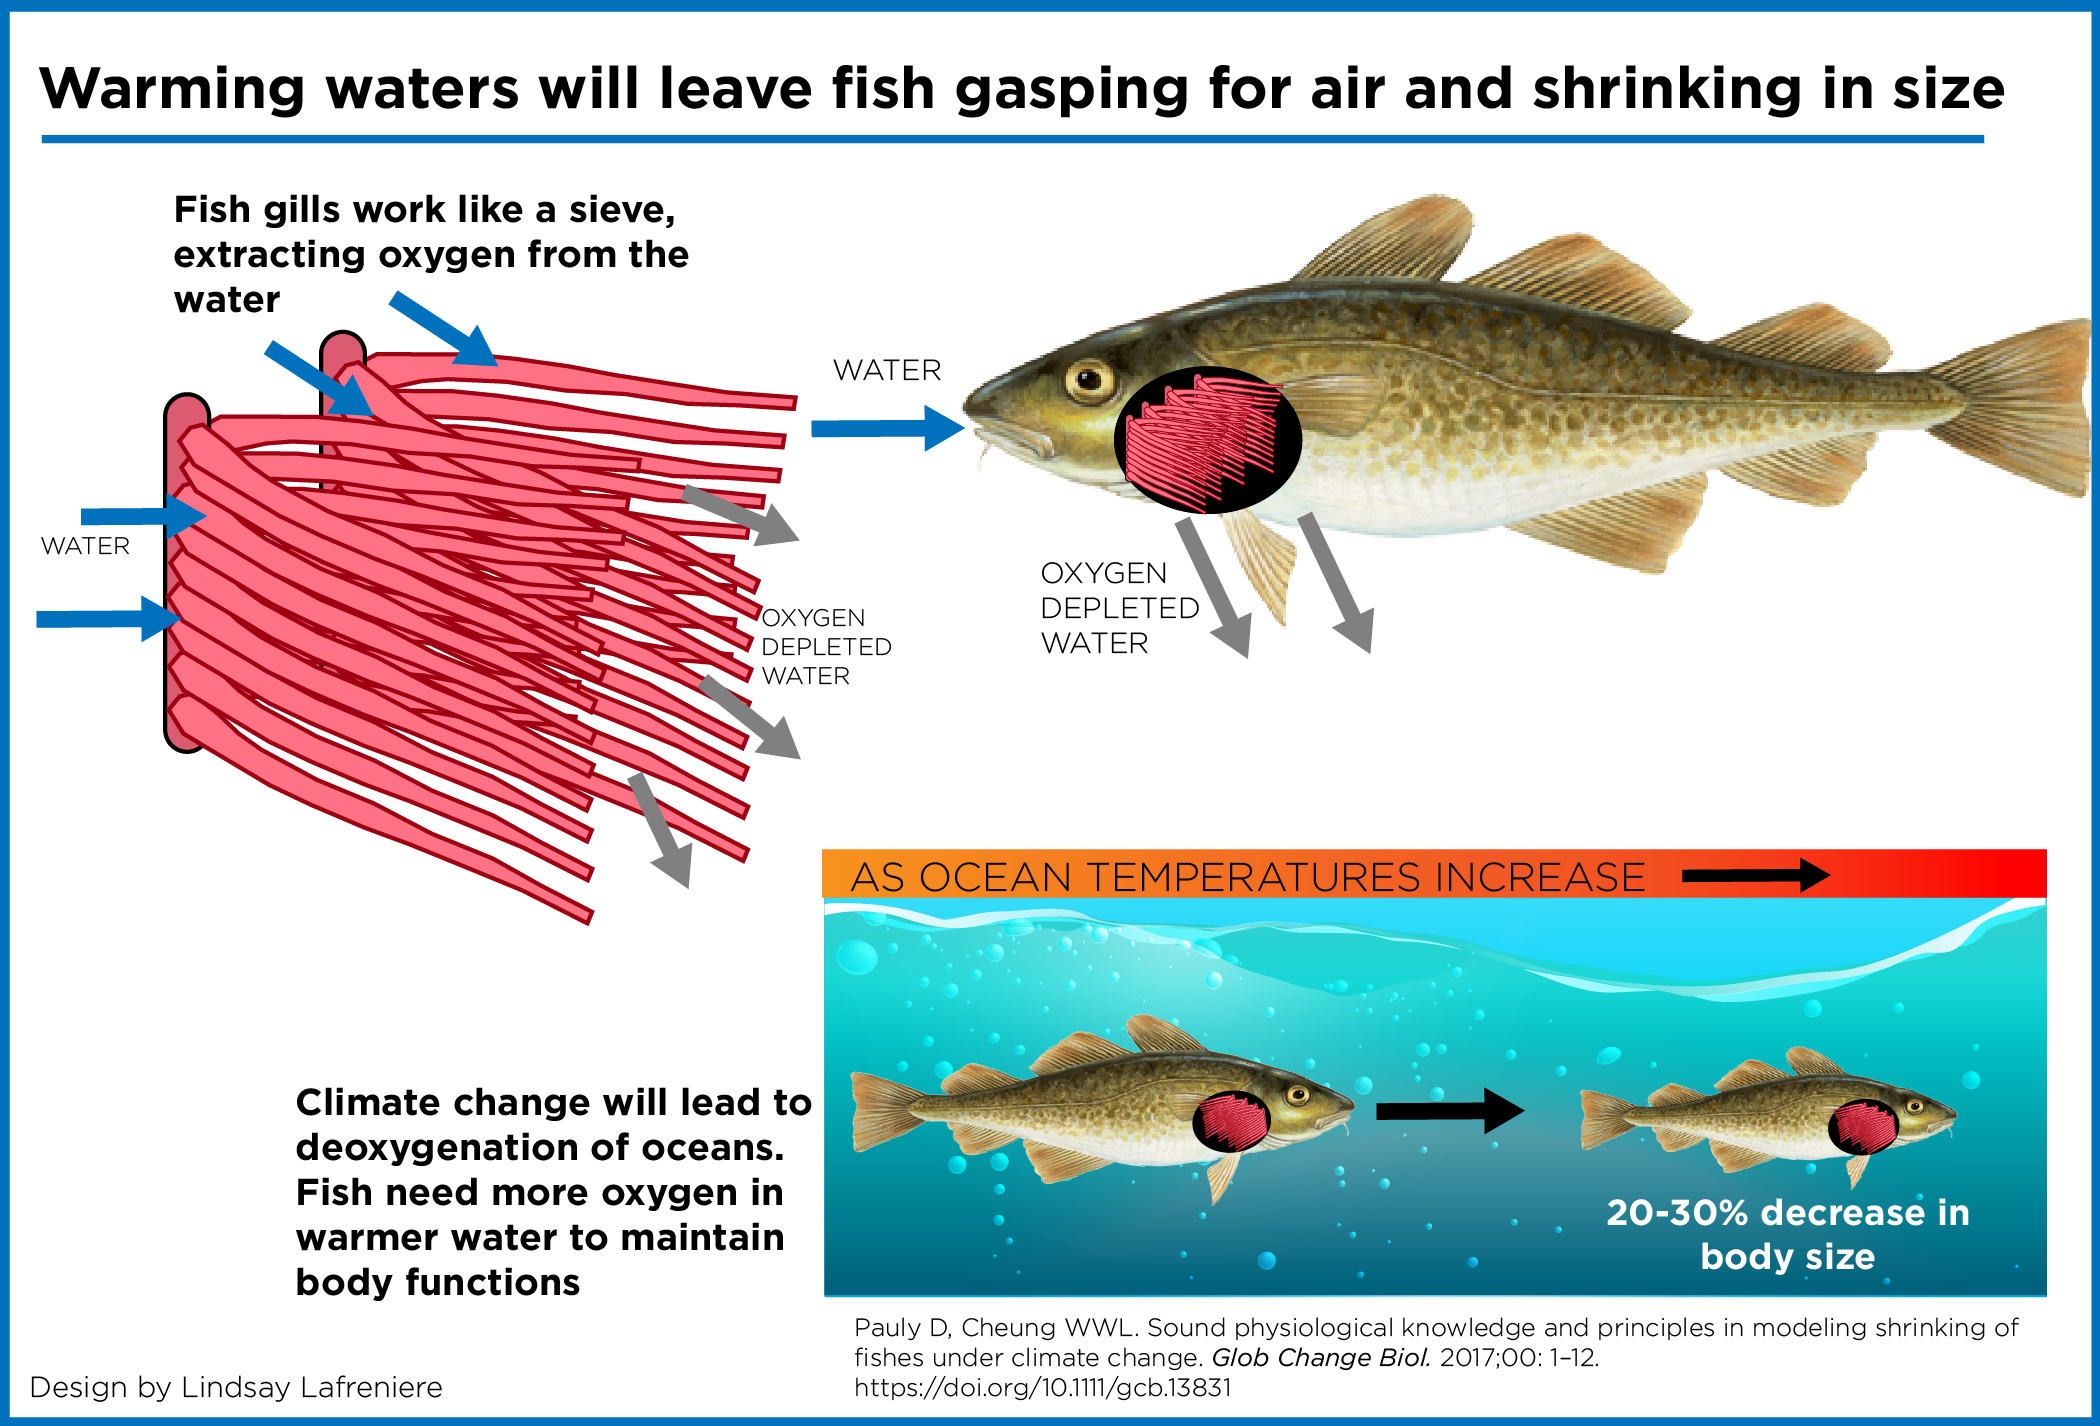 Estudo indica que o aquecimento das águas, pelas mudanças climáticas, deve reduzir o tamanho dos peixes